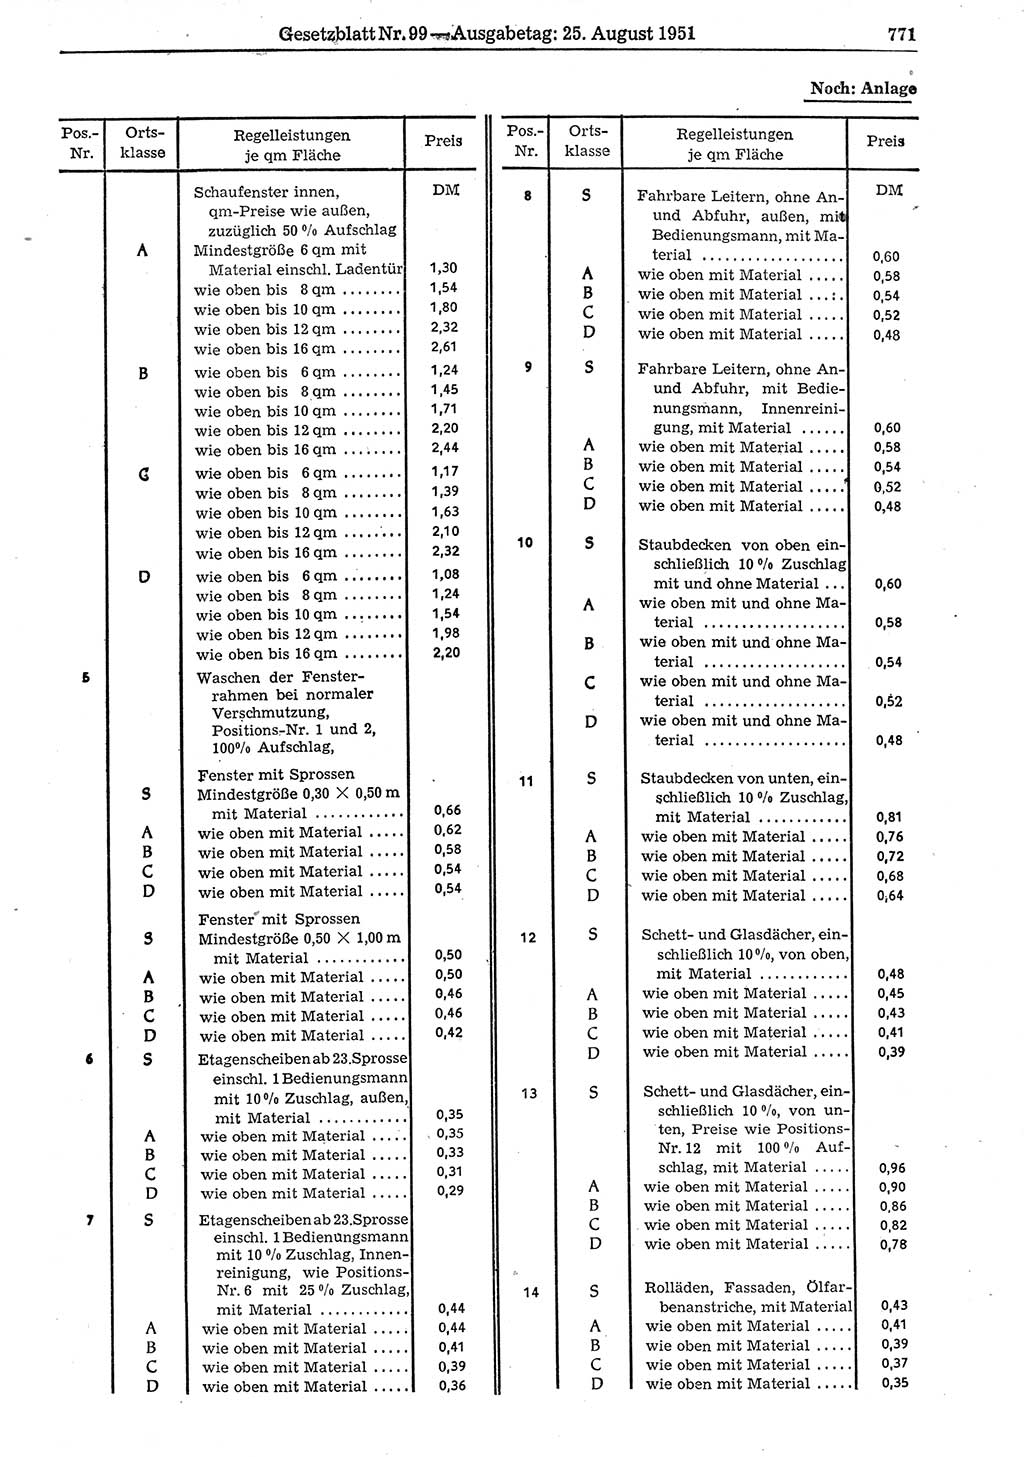 Gesetzblatt (GBl.) der Deutschen Demokratischen Republik (DDR) 1951, Seite 771 (GBl. DDR 1951, S. 771)